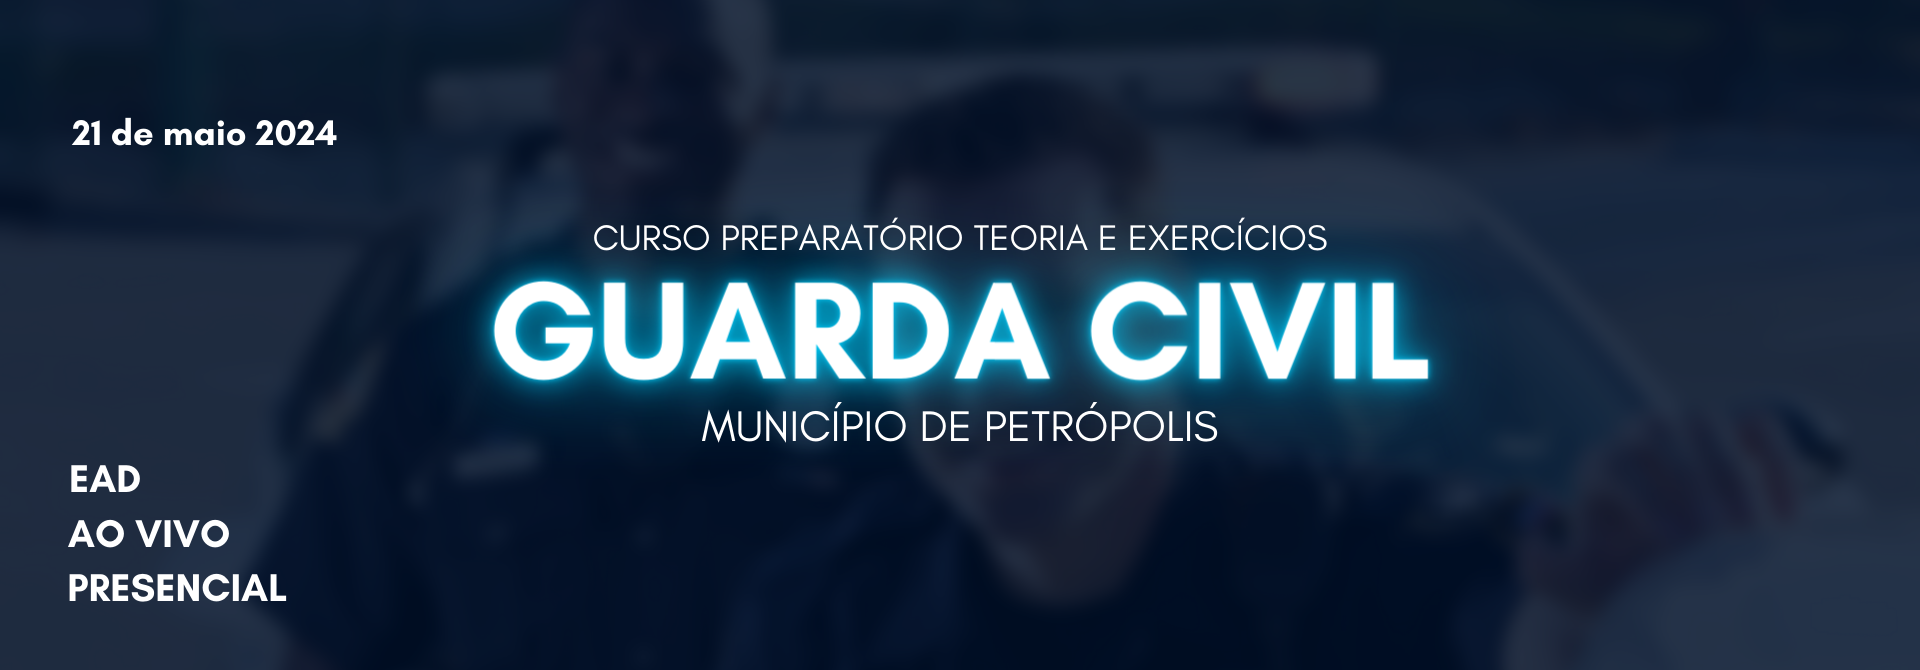 GUARDA CIVIL MUNICIPAL - TEORIA ATRAVÉS DE EXERCÍCIOS - PETRÓPOLIS 2024